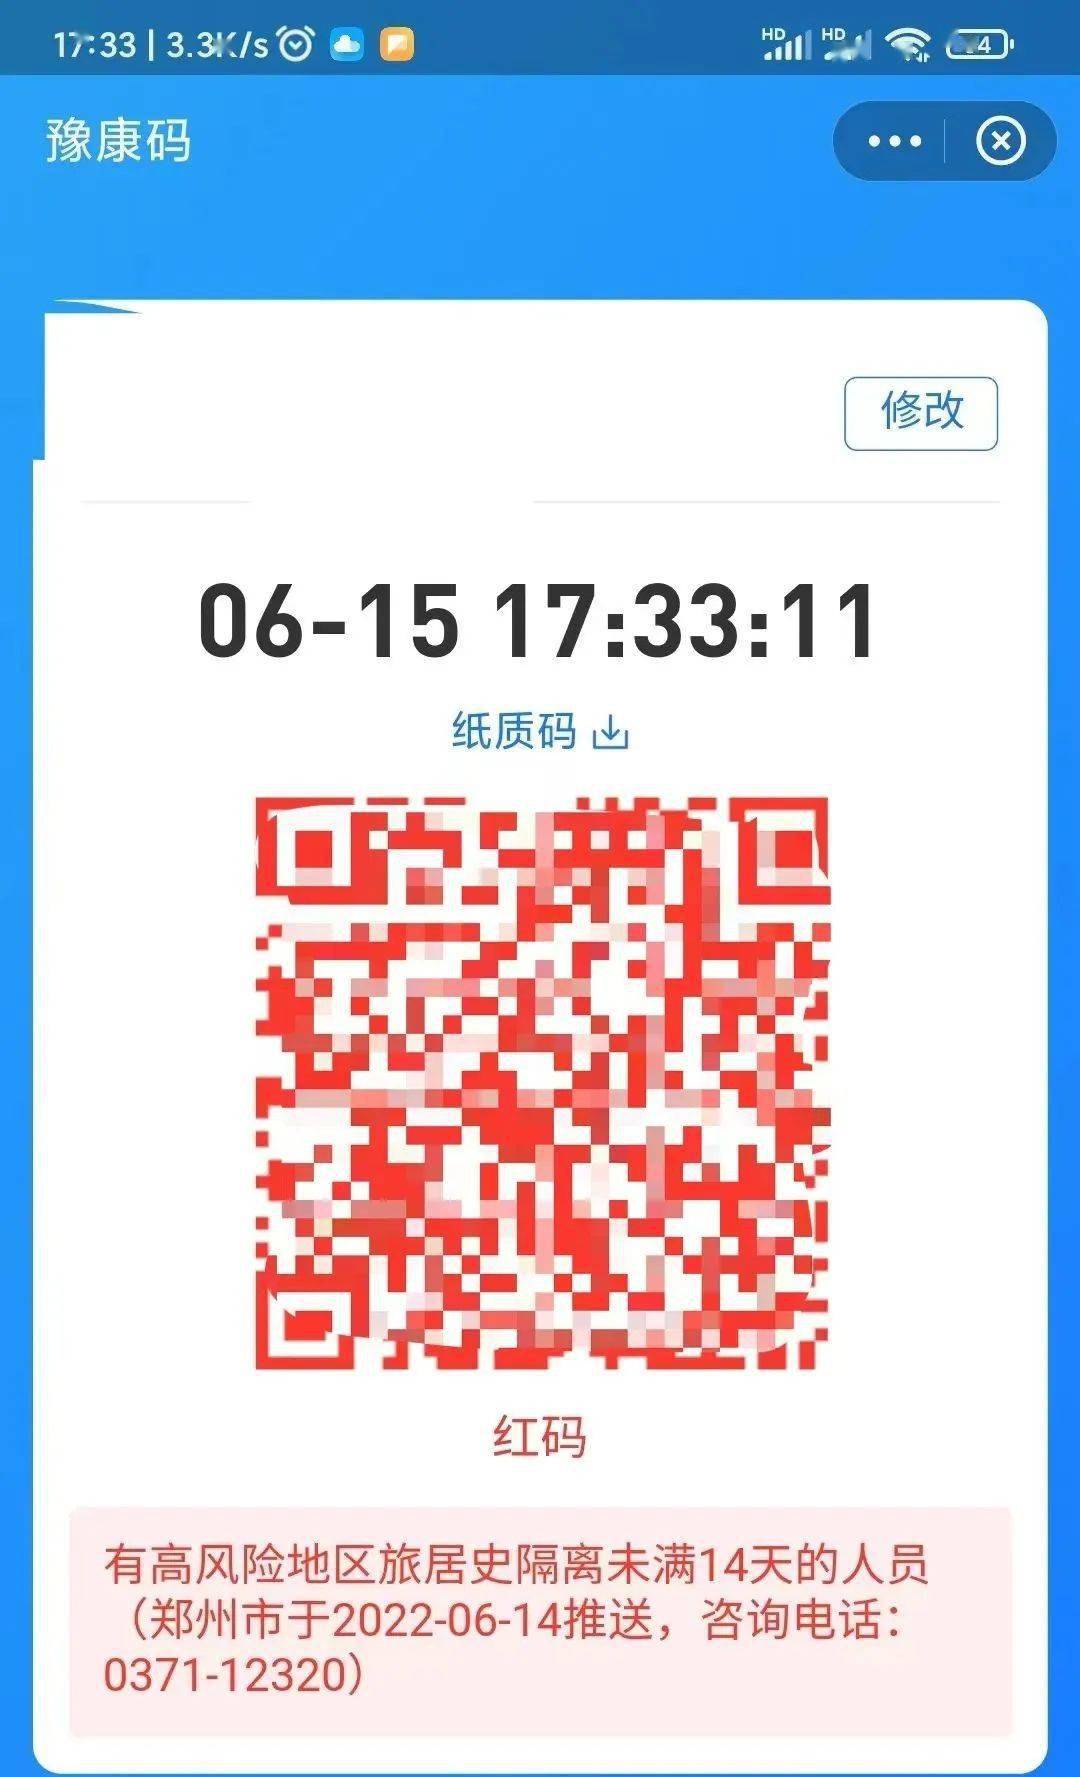 热线037112345的录音显示,接线员称:河南健康码并不是郑州市负责